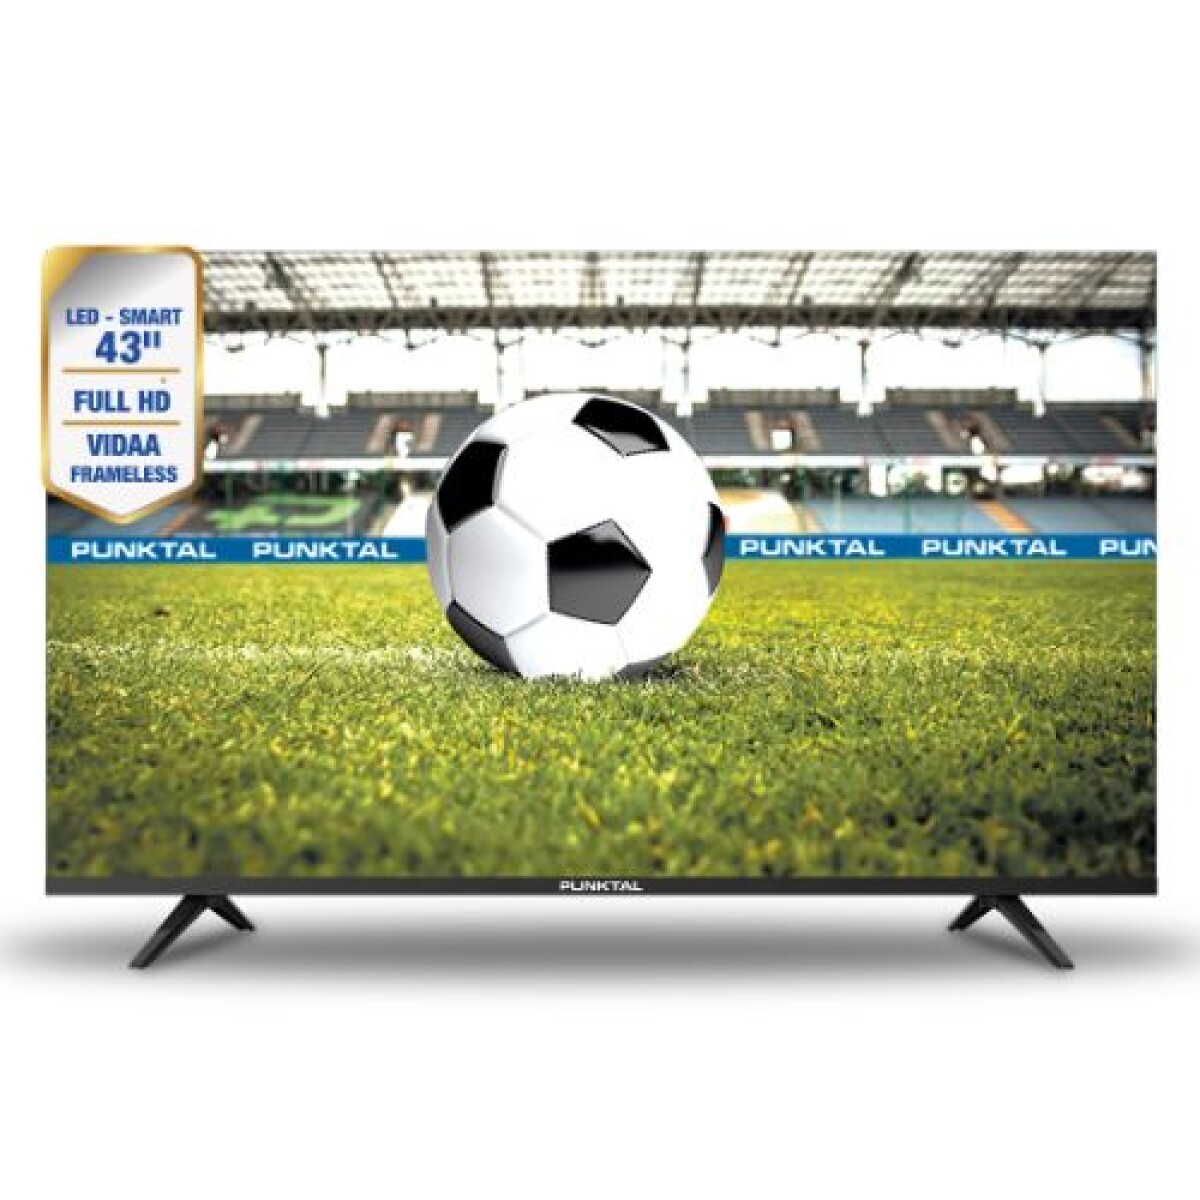 Televisor led smart tv 43" Punktal frameless full HD - PK-43 JJV 